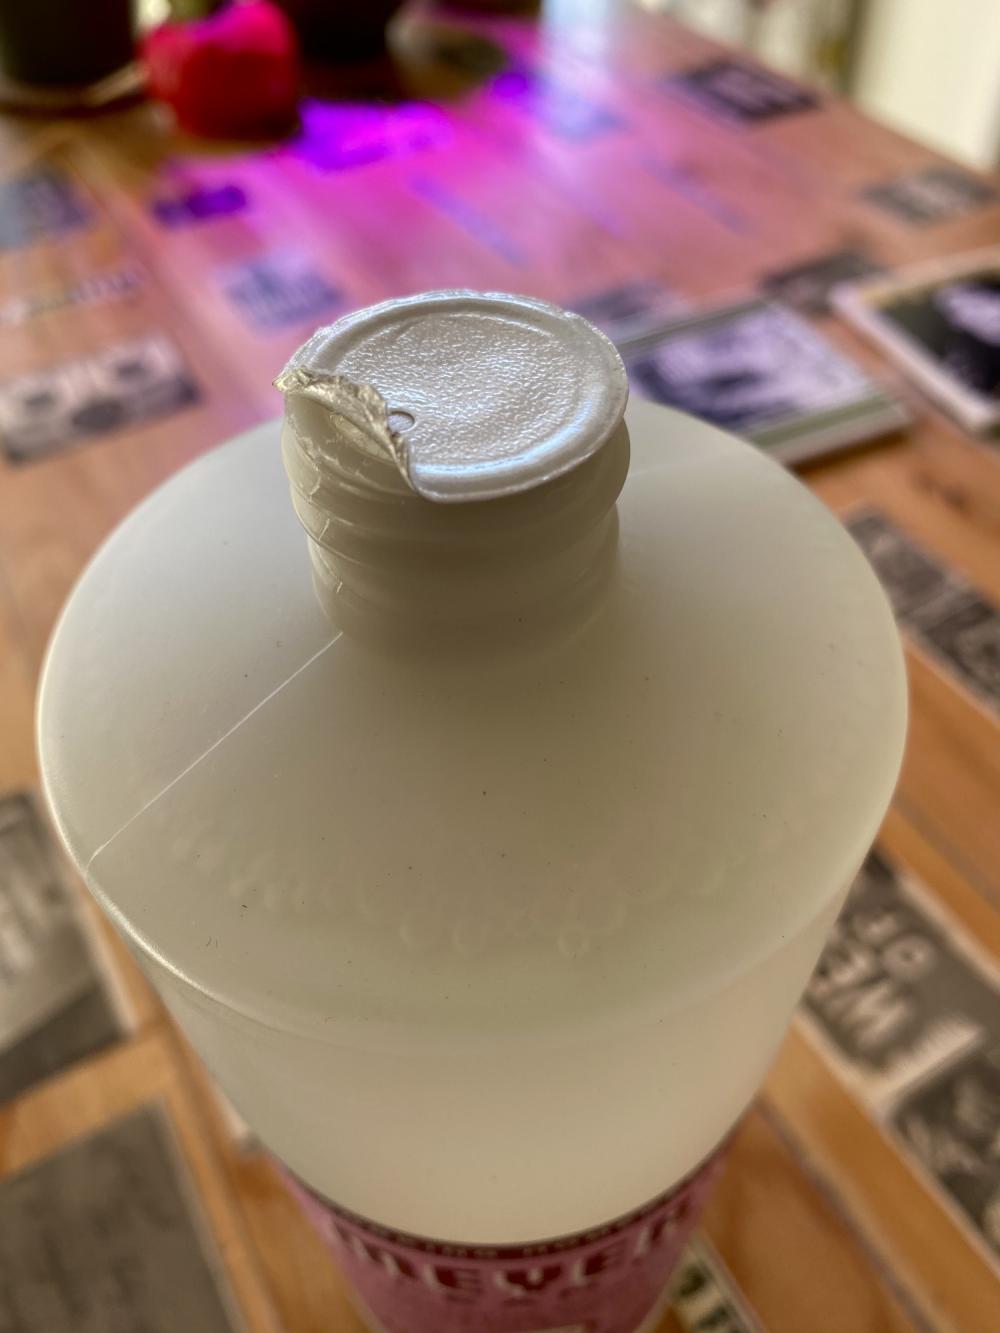 Plastic bottle seal